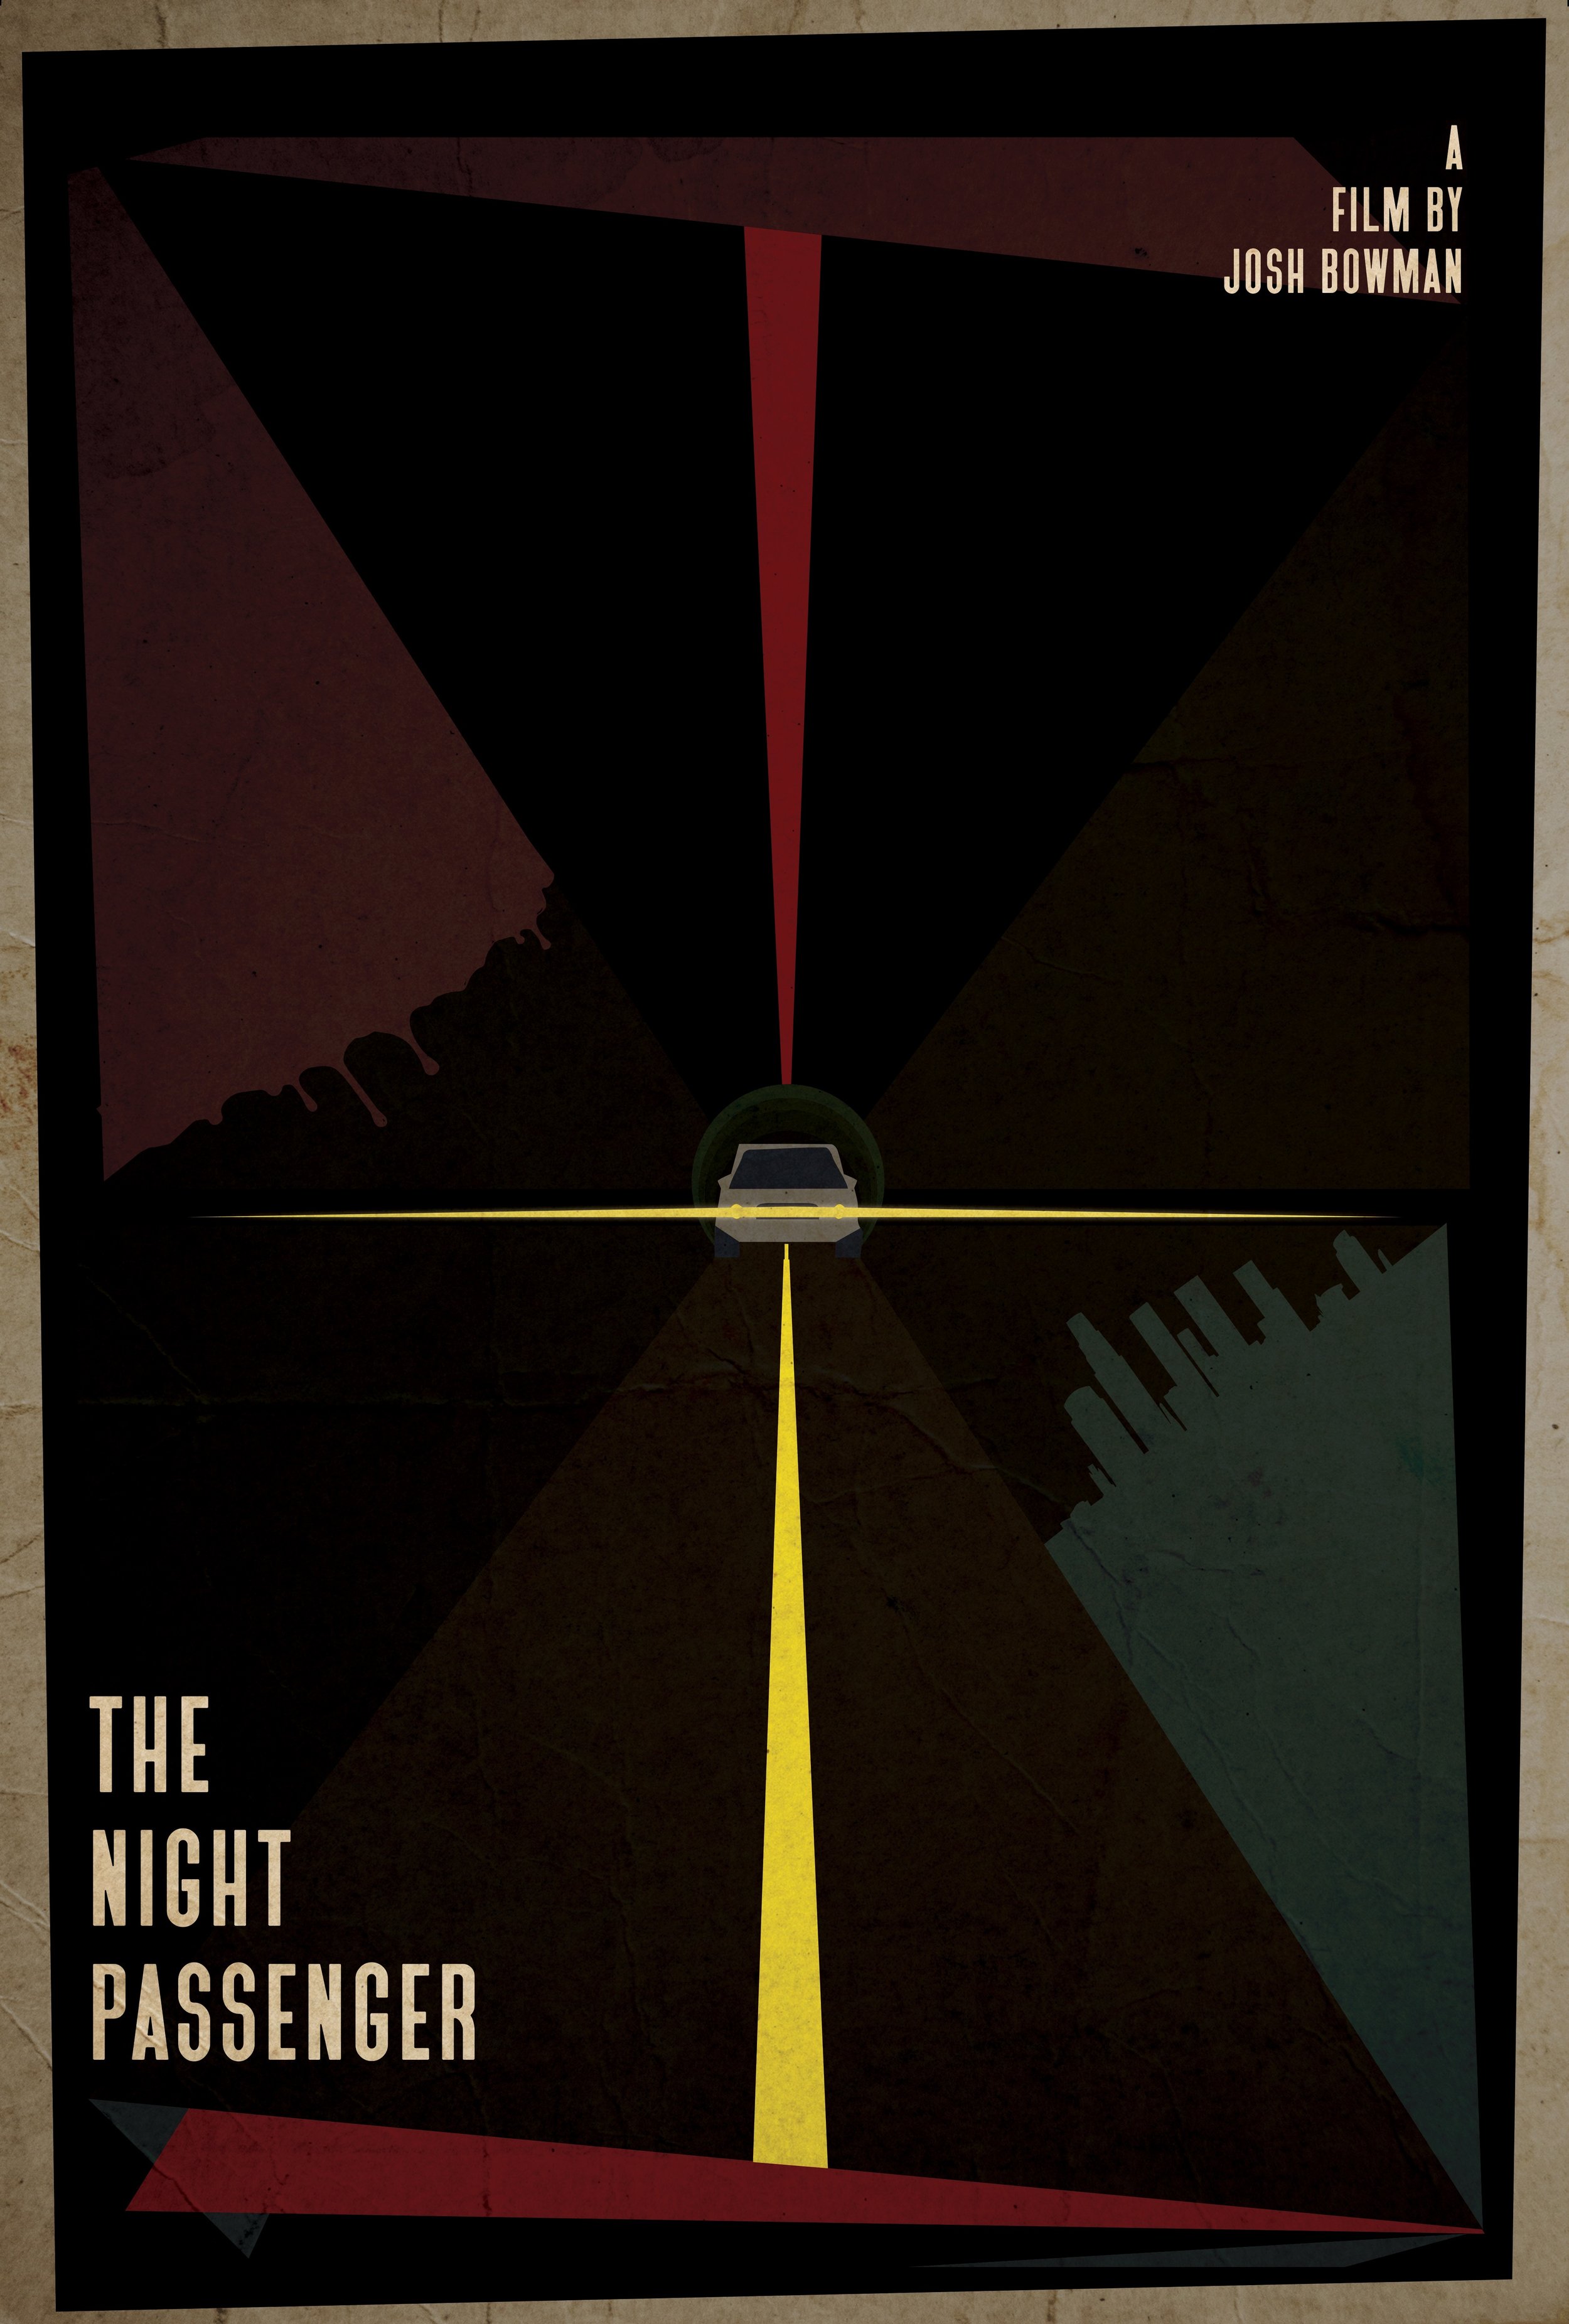 The Night Passenger (2021) - Score Mixer